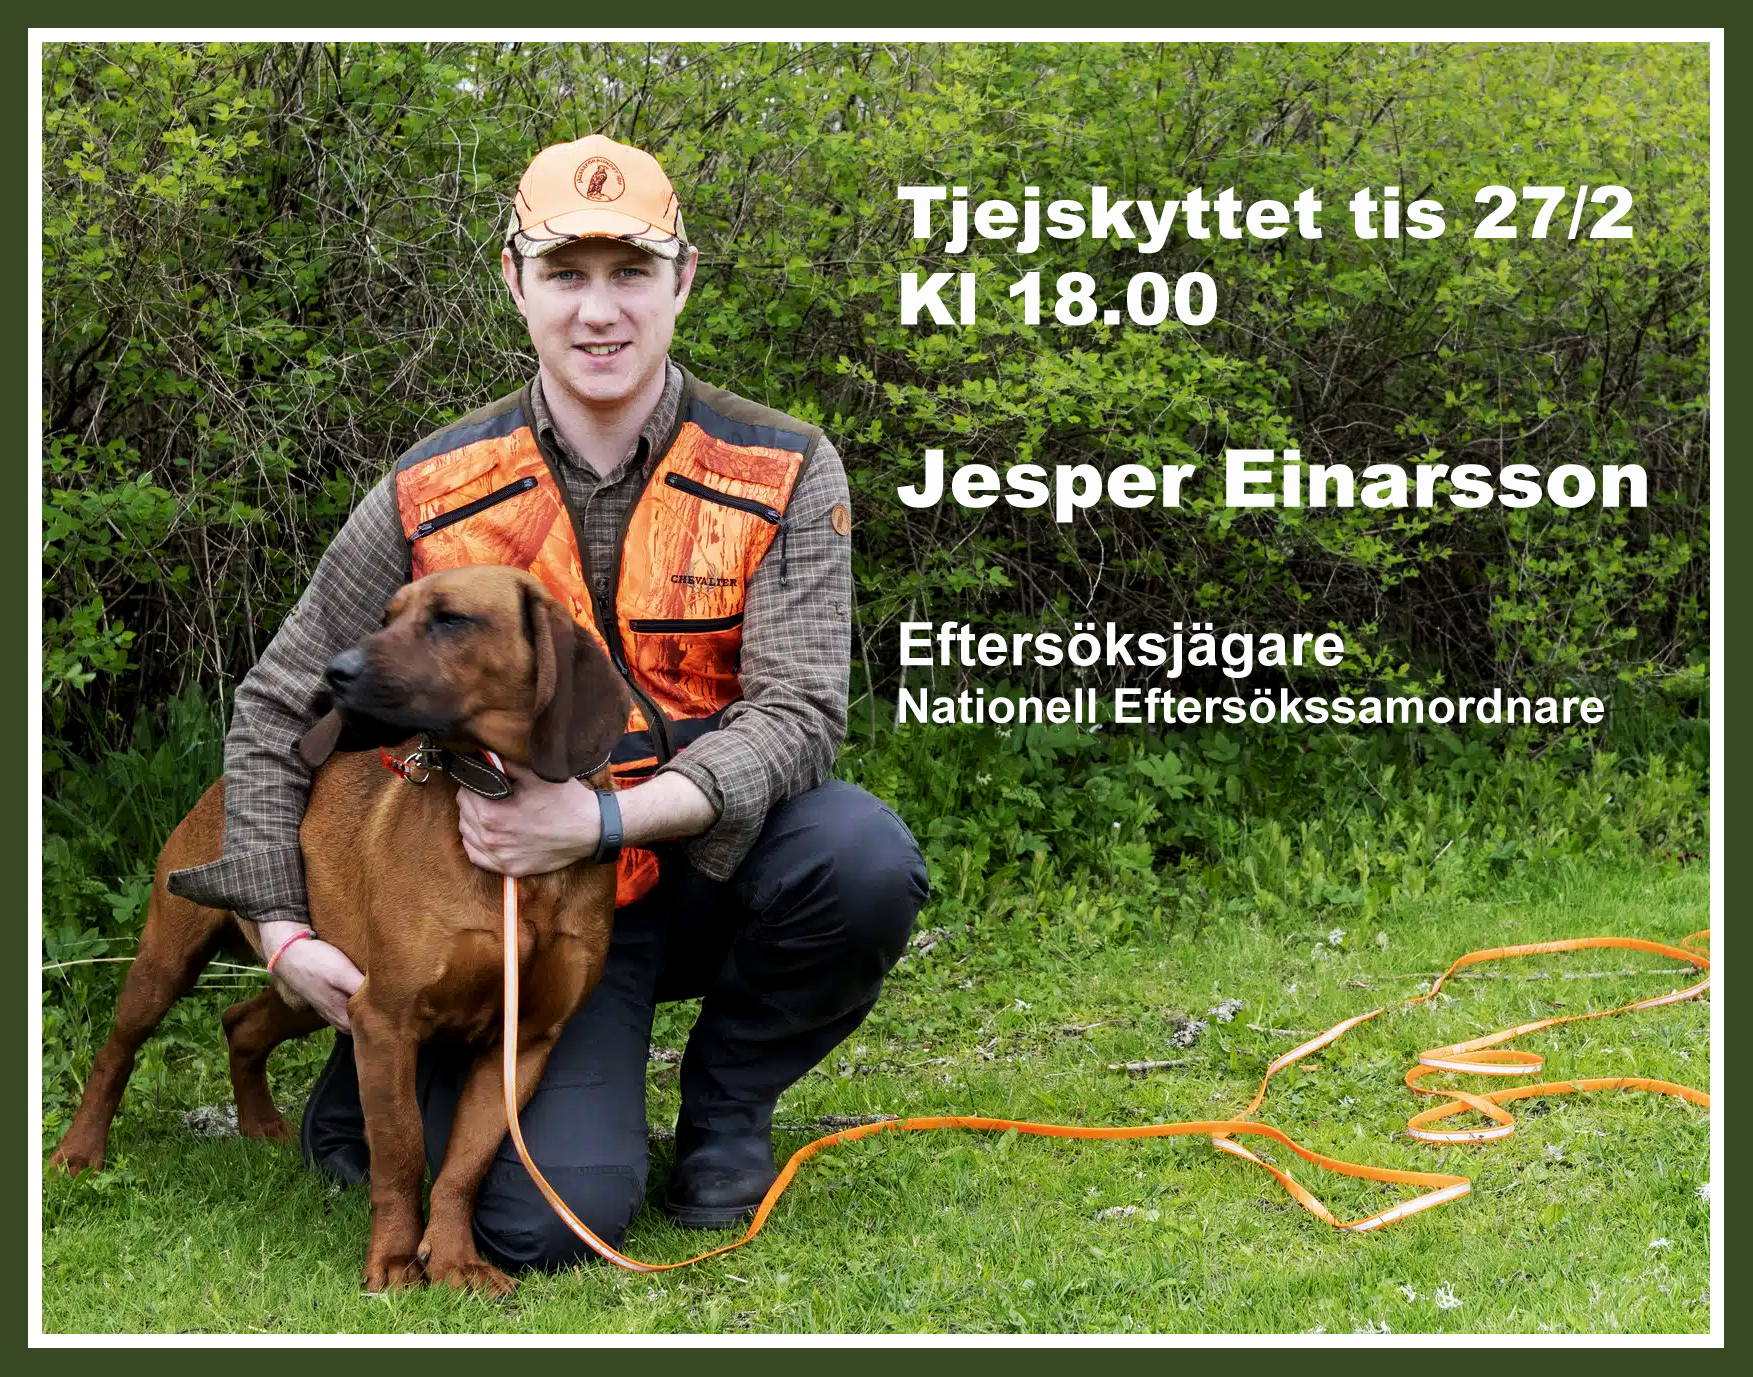 Jesper Einarsson, eftersöksjägare kommer till Tjejskyttet